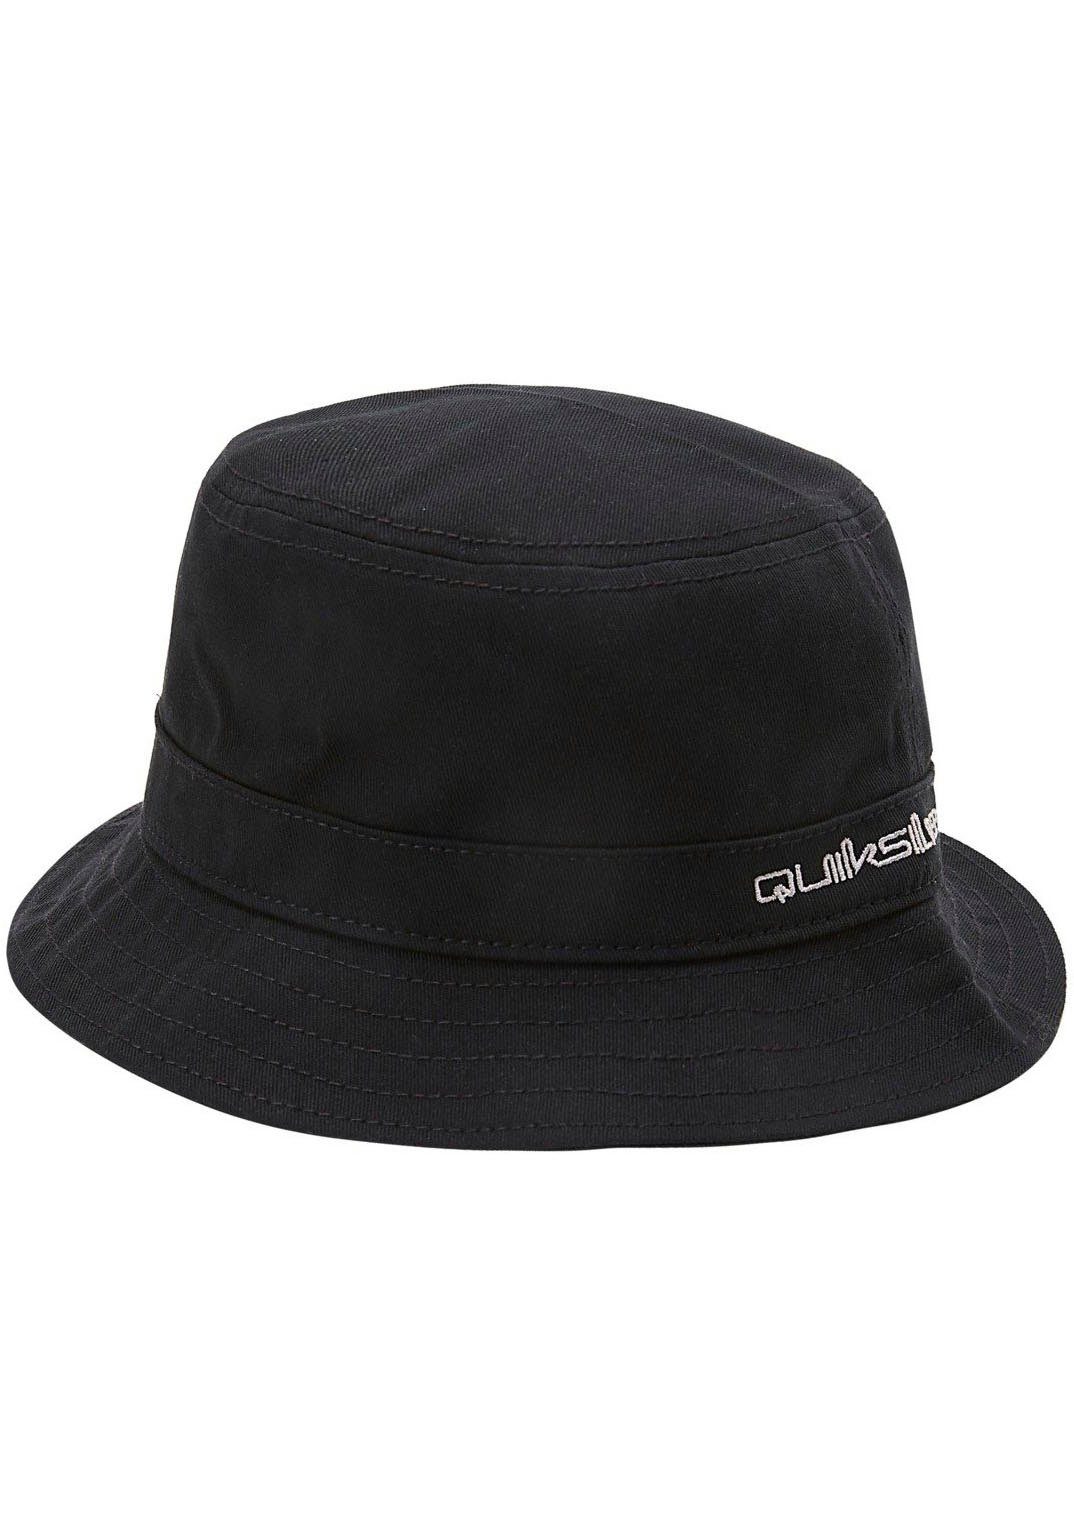 Quiksilver Sonnenhut Herren Fischerhut Bucket Hat Black | Sonnenhüte